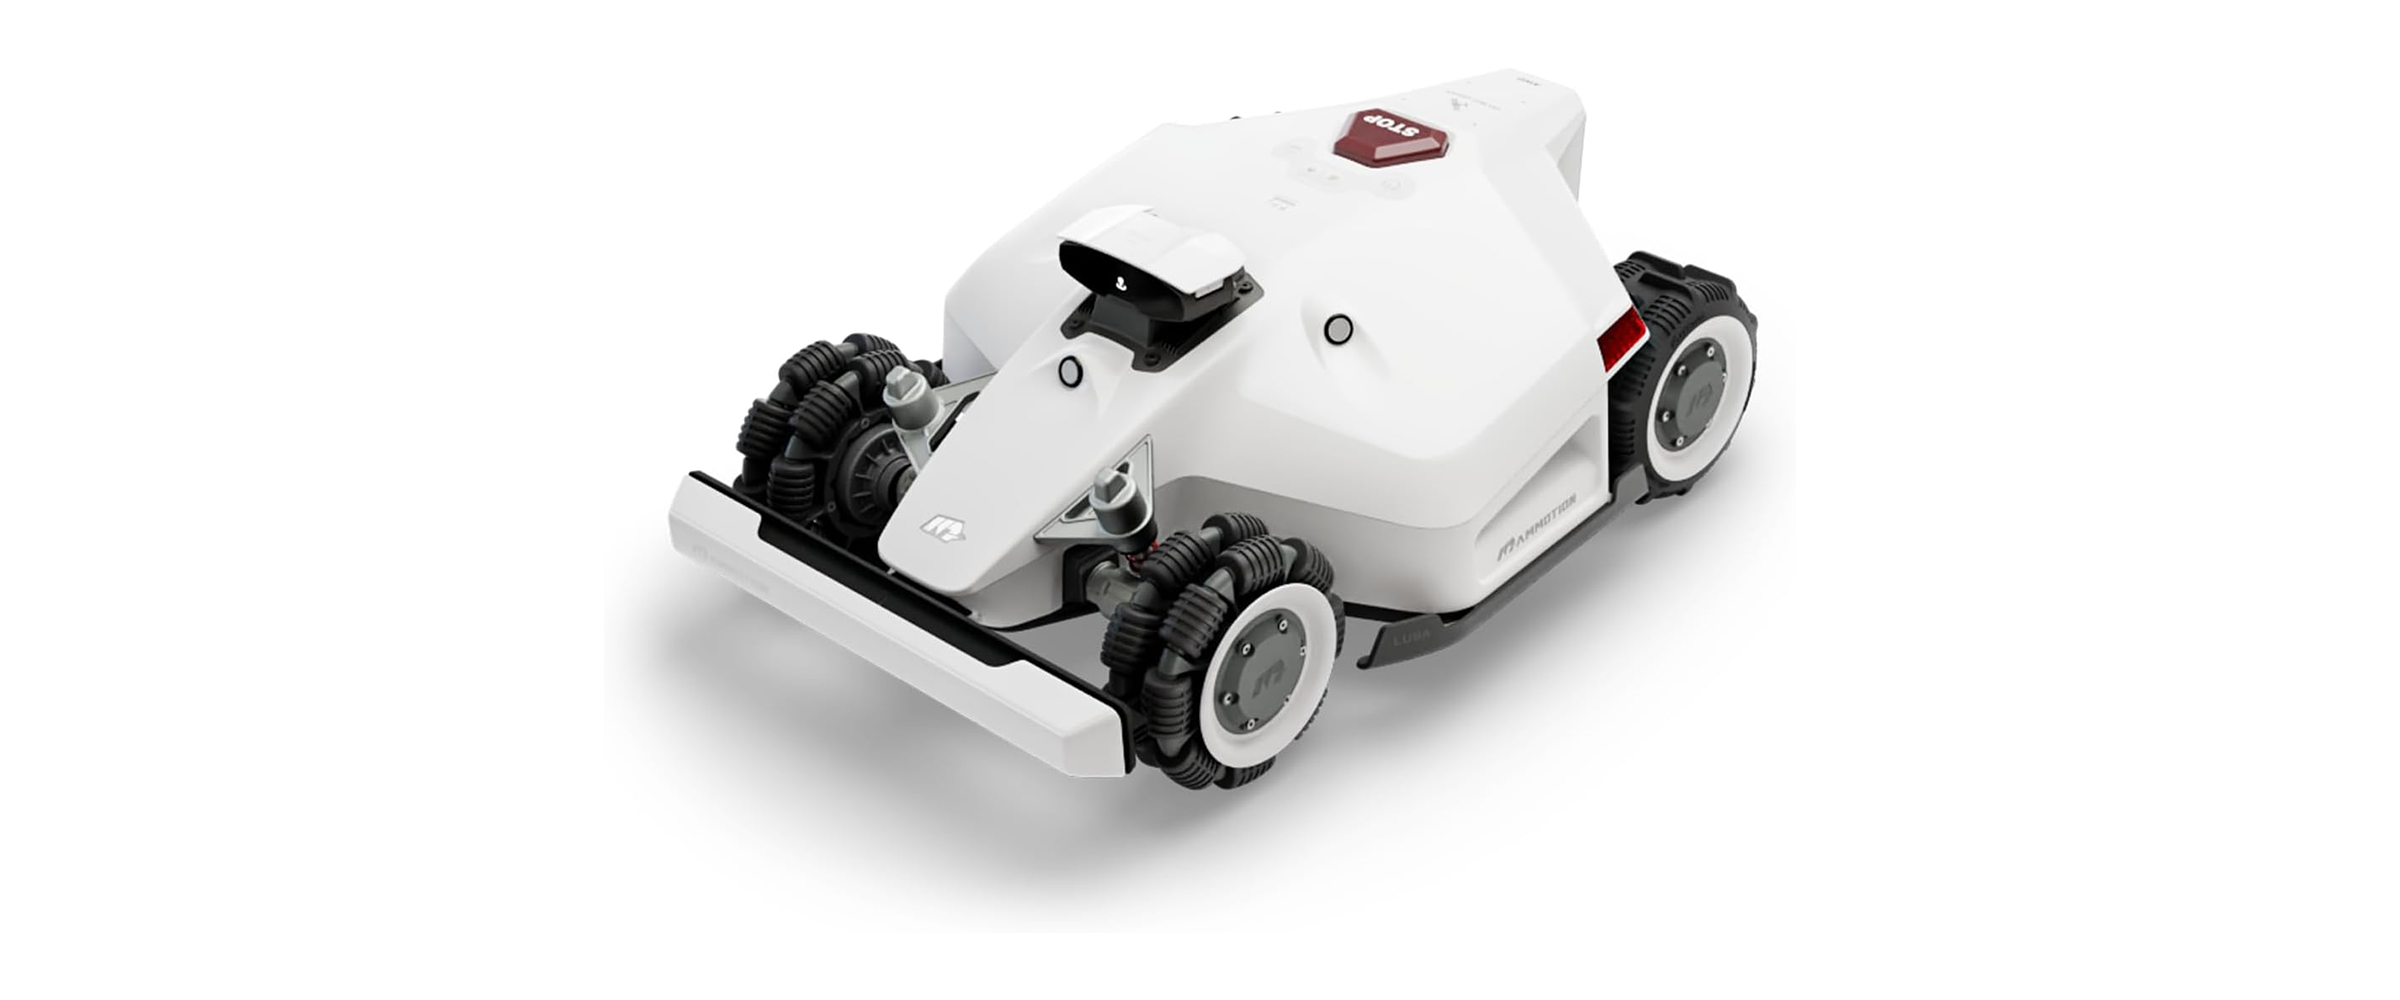 Der Mähroboter Mammotion LUBA 2 5000 vor weißem Hintergrund. Der flotte Roboter fällt durch sein schnittiges Formel-1-Design auf und erinnert tatsächlich an ein Rennauto. Farblich ist er komplett in Weiß gehalten - bis auf schwarze Reifen und den roten Stop-Button.